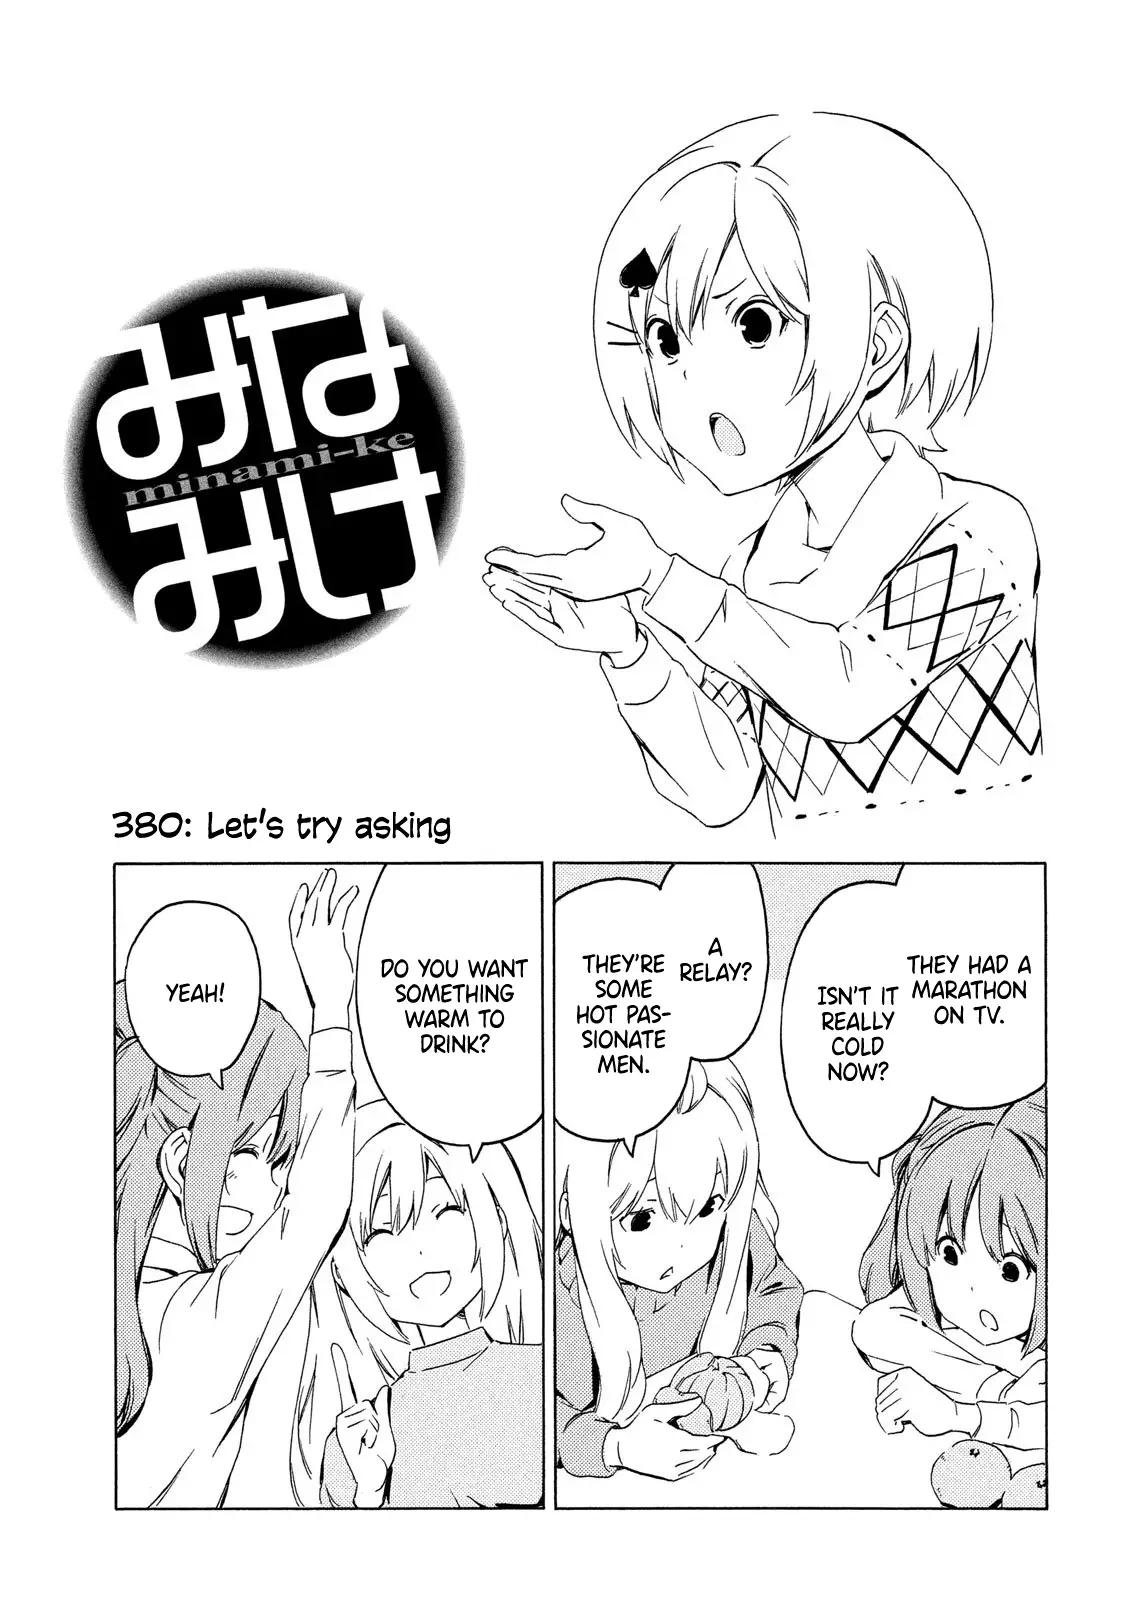 Minami-ke - 380 page 1